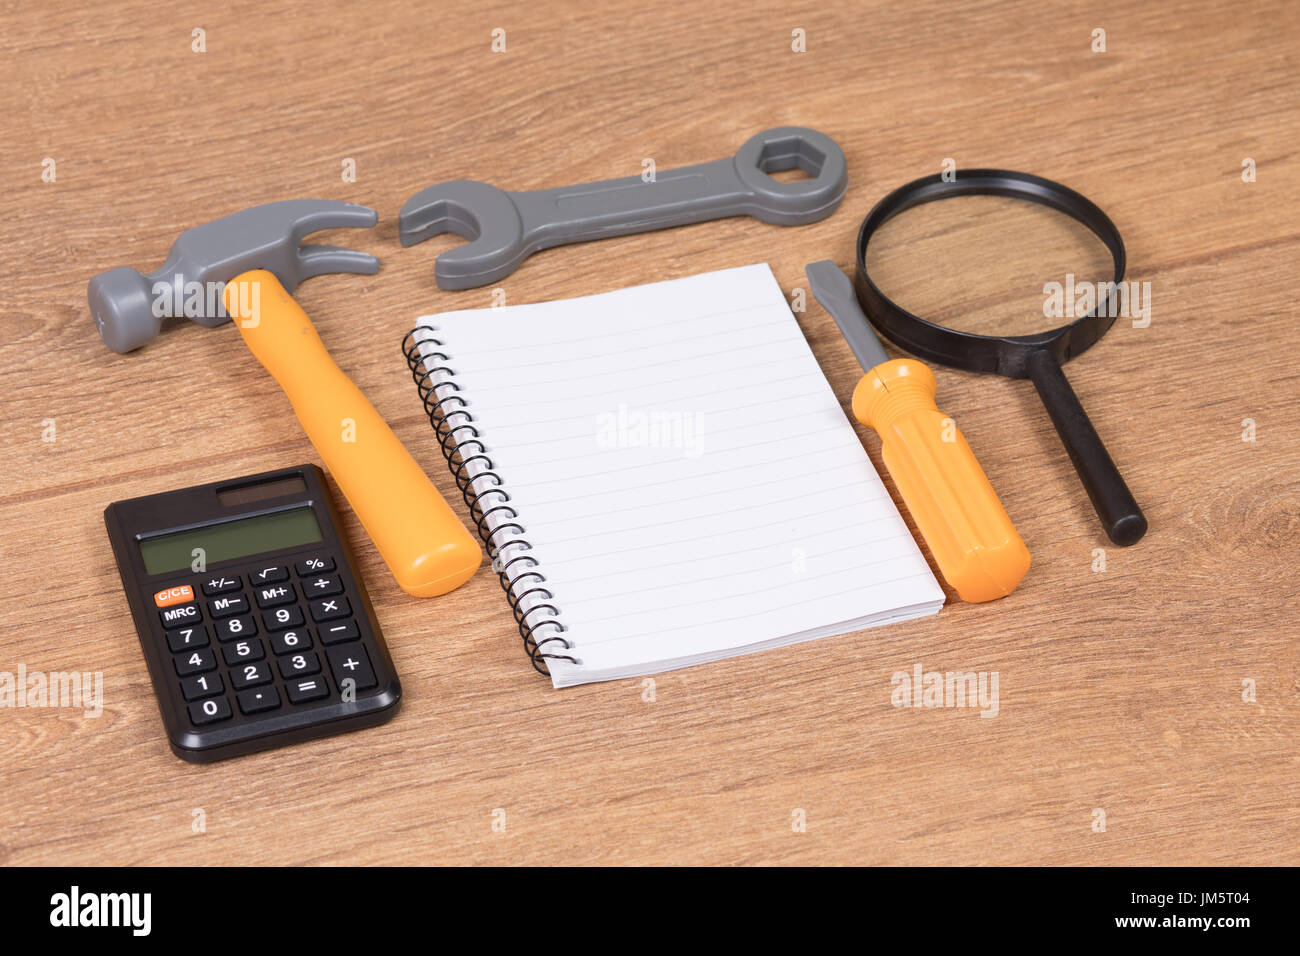 Passage vue rapprochée sur plusieurs outils jouet en plastique et bloc-notes et calculatrice et loupe sur table en bois Banque D'Images